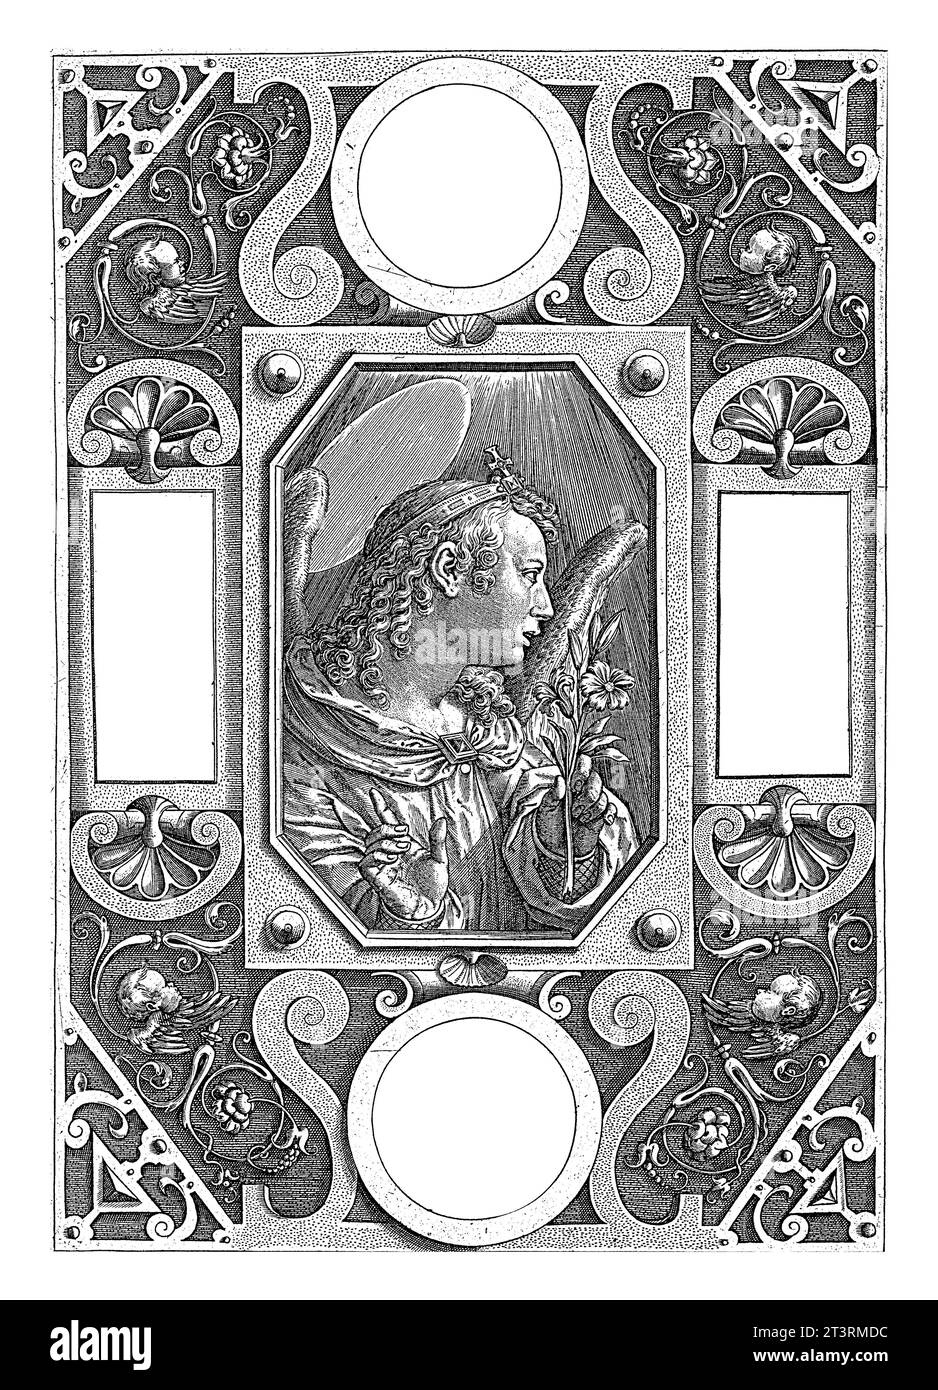 Annonciation (ange Gabriel), Hieronymus Wierix, d'après Jan van der Straet, 1598 - 1602 l'ange Gabriel tient un lys dans sa main et fait un discours Banque D'Images